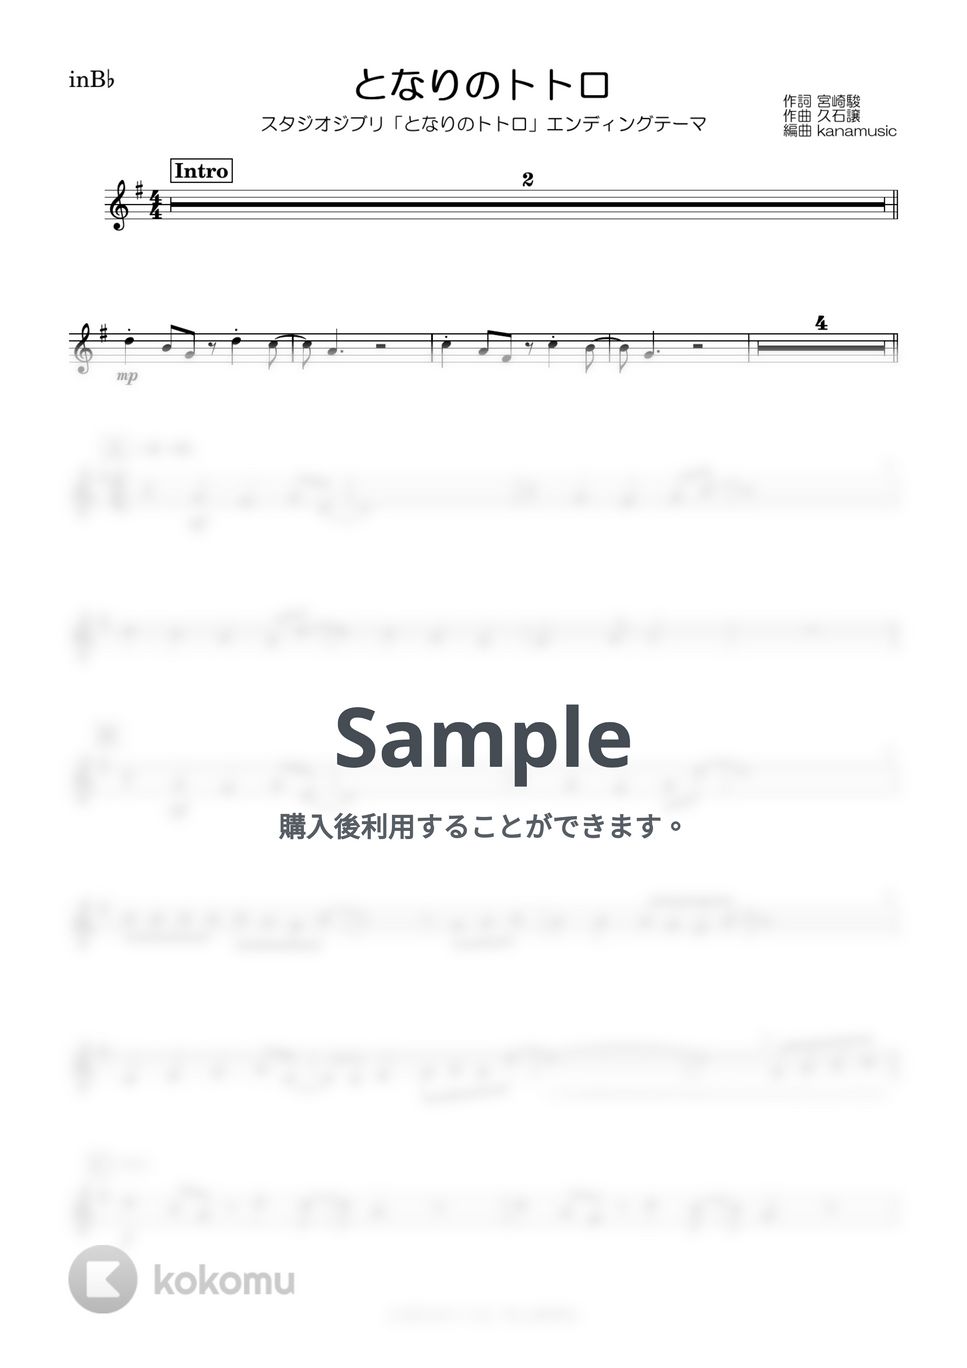 井上あずみ - となりのトトロ (B♭) by kanamusic